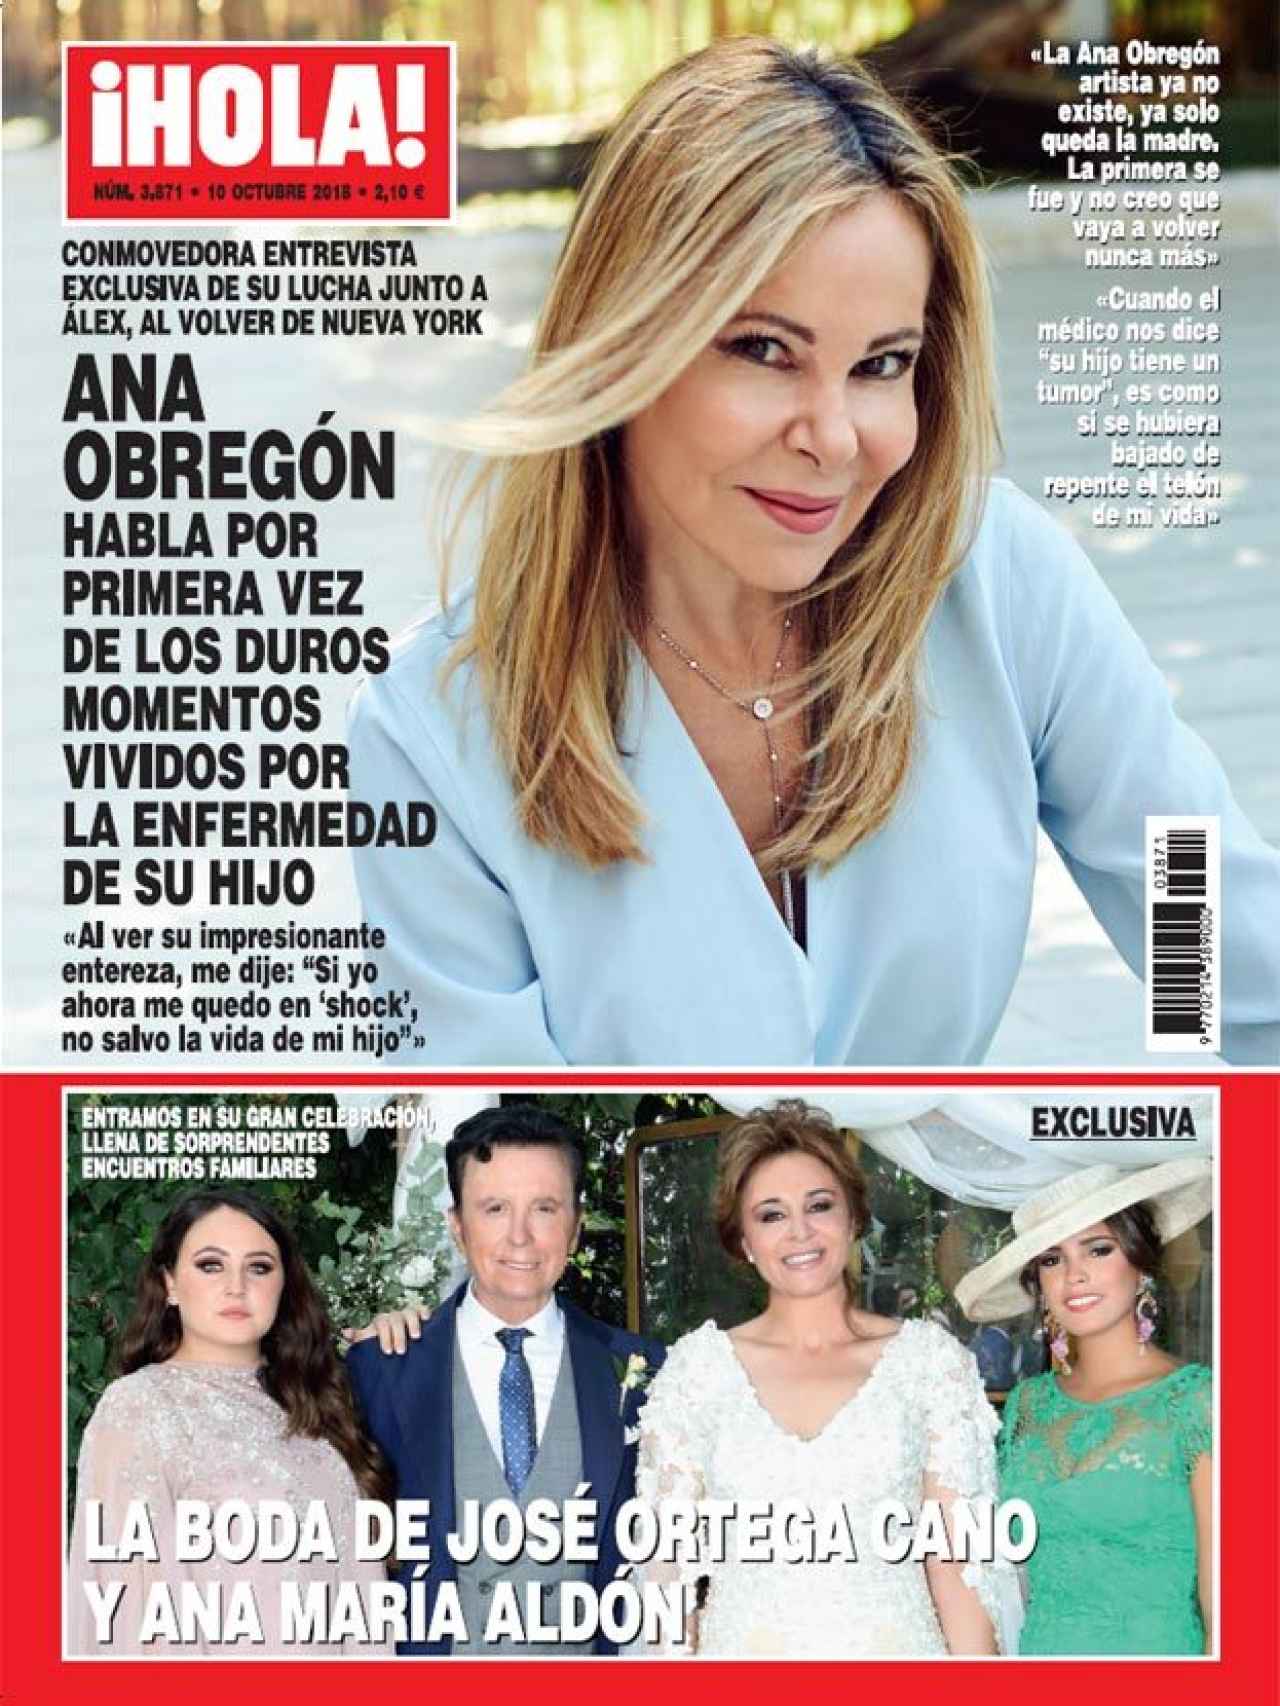 Portada de la revista ¡HOLA! con la exclusiva d ela boda de José Ortega Cano y Ana María Aldón.